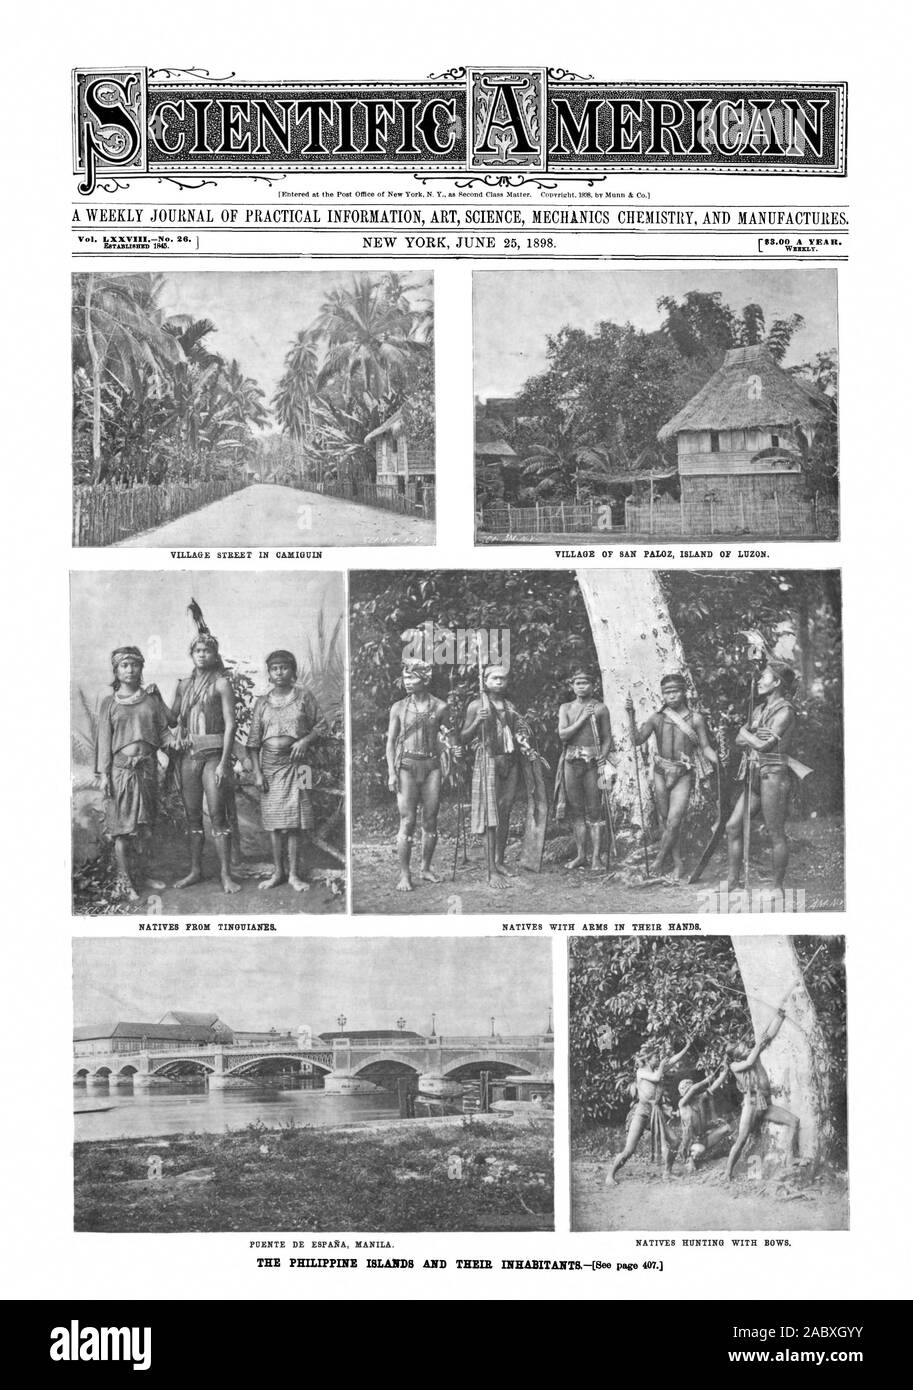 Dorf Straße LN CAMIGUIN DORF SAN PALOZ INSEL LUZON. PUENTE DE ESPANA MANILA. Einheimische Jagd mit Bogen., Scientific American, 1898-06-25 Stockfoto